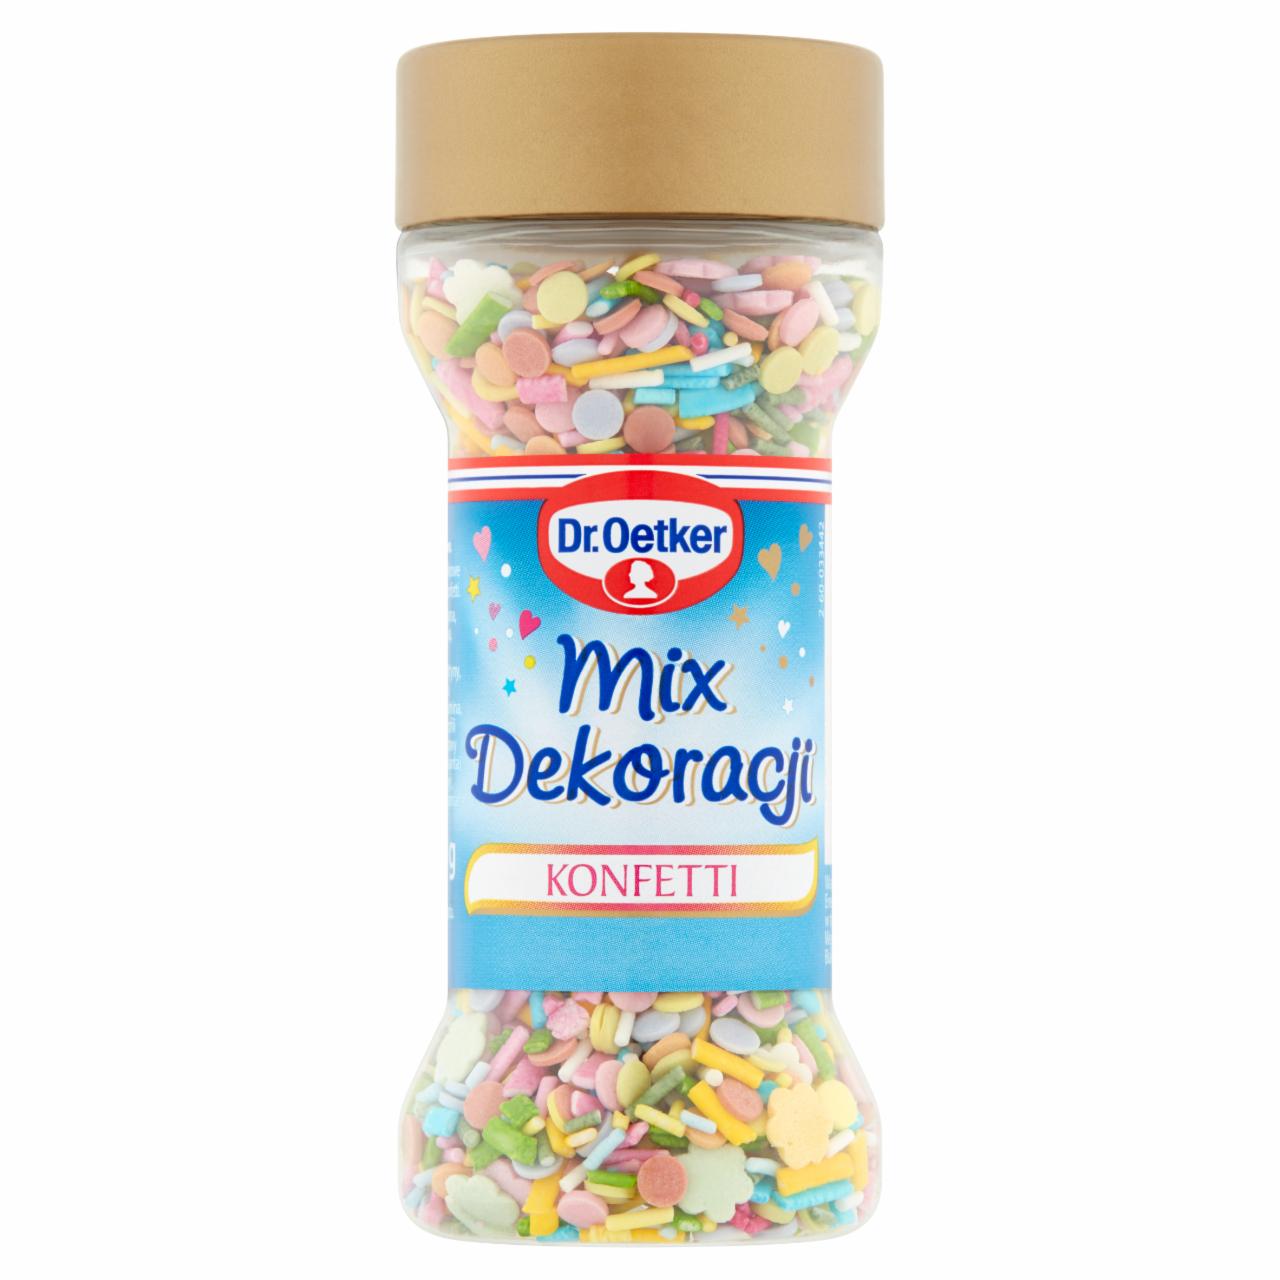 Zdjęcia - Dr. Oetker Mix dekoracji konfetti 50 g